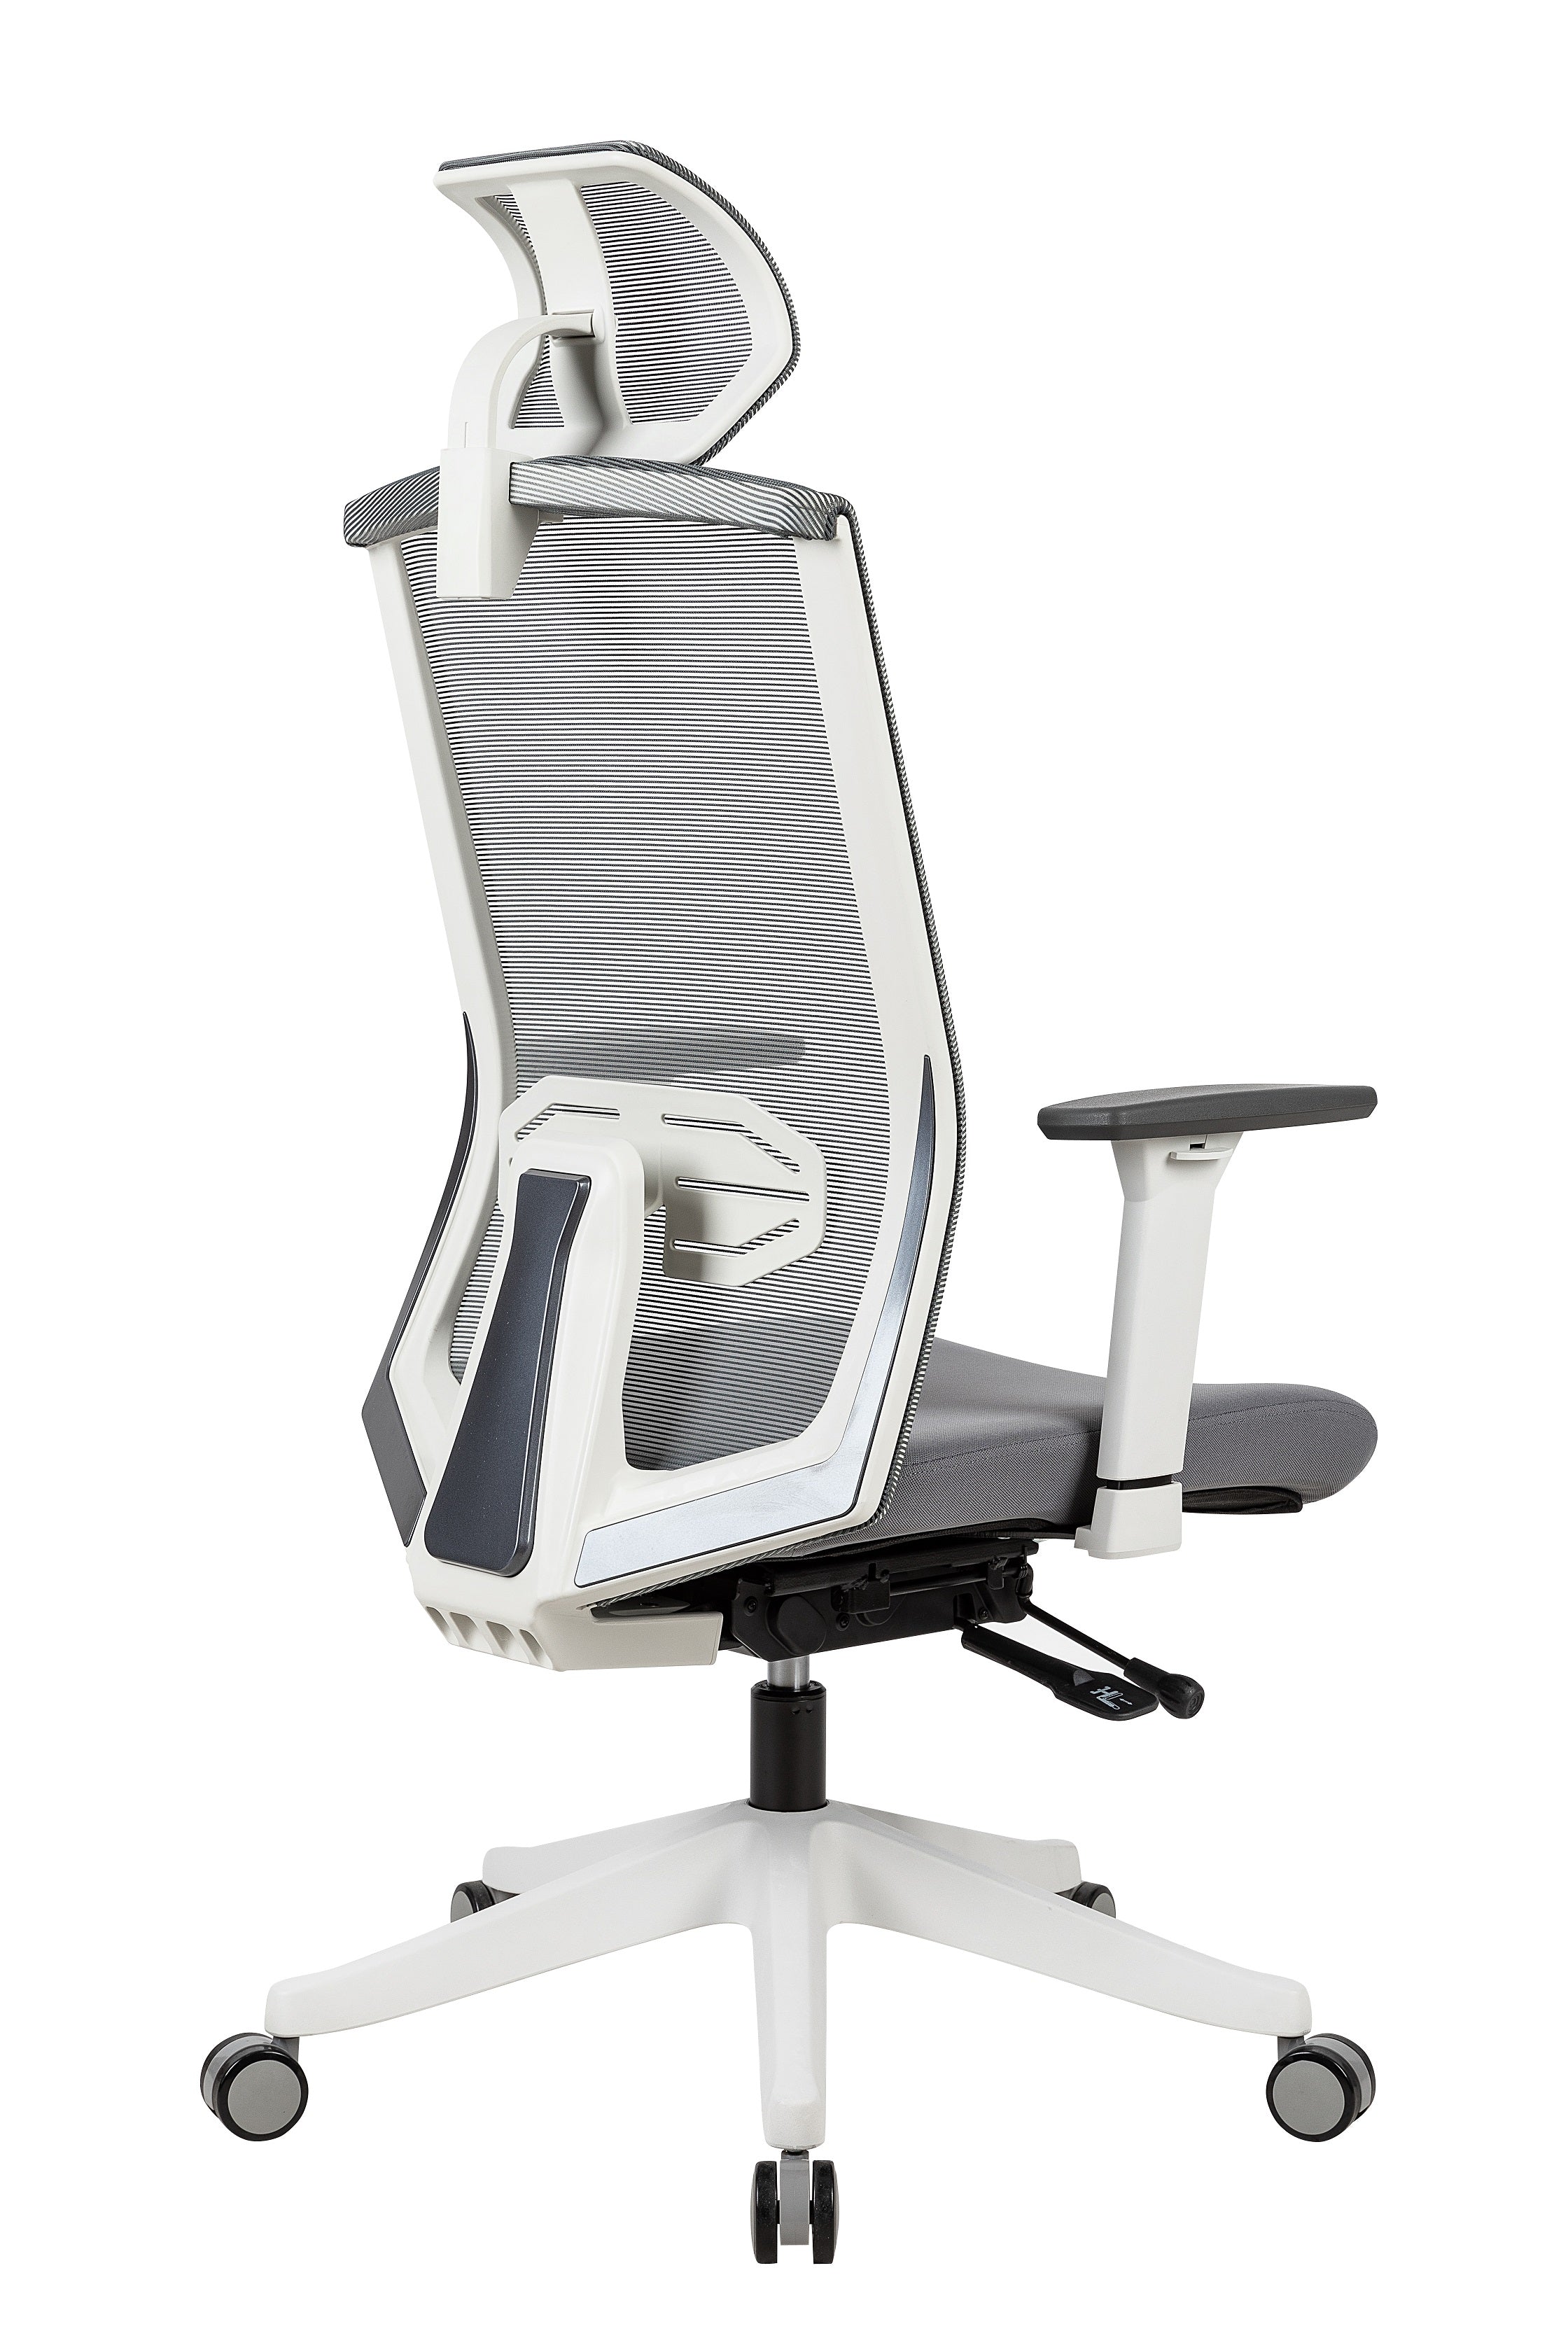 KarmaChair - Ergonomic Chair